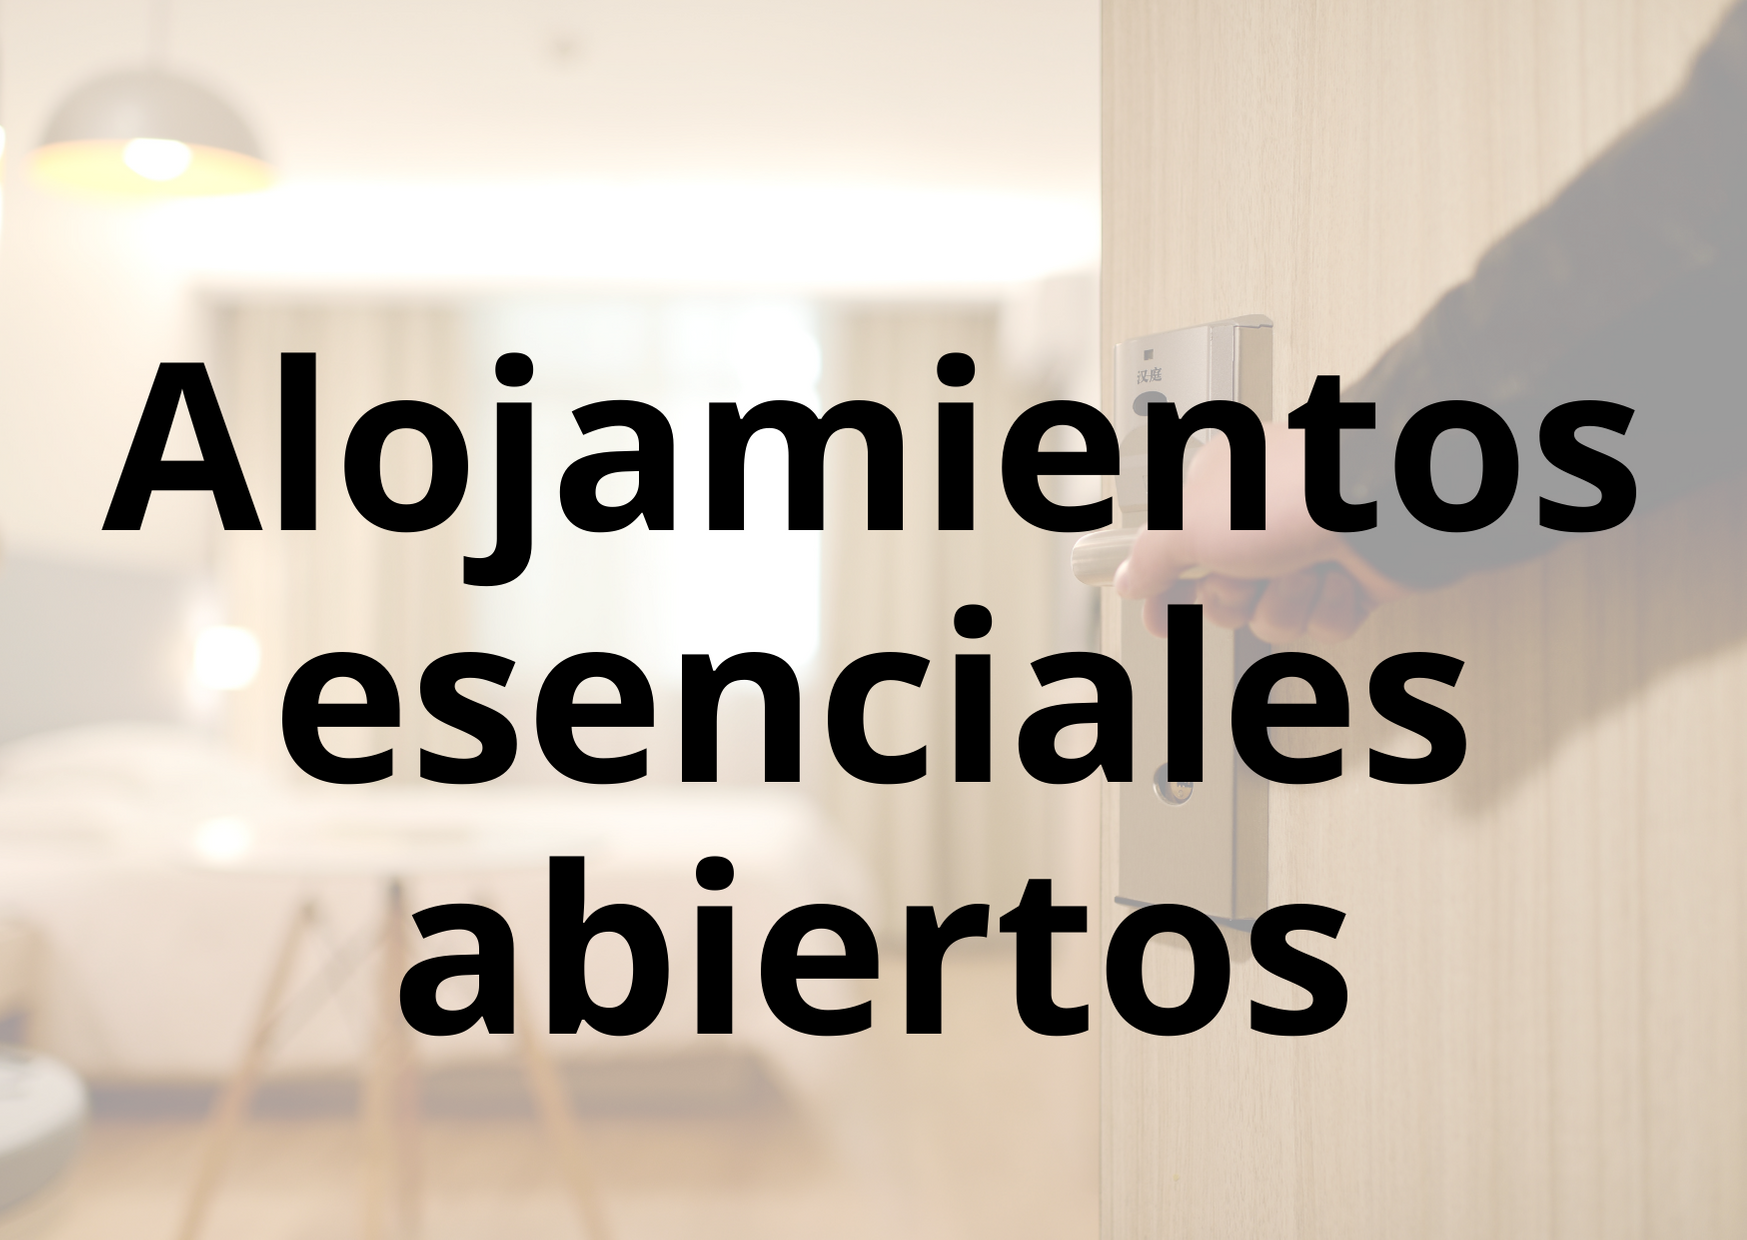 Acceso a información sobre los alojamientos esenciales abiertos en Gijón